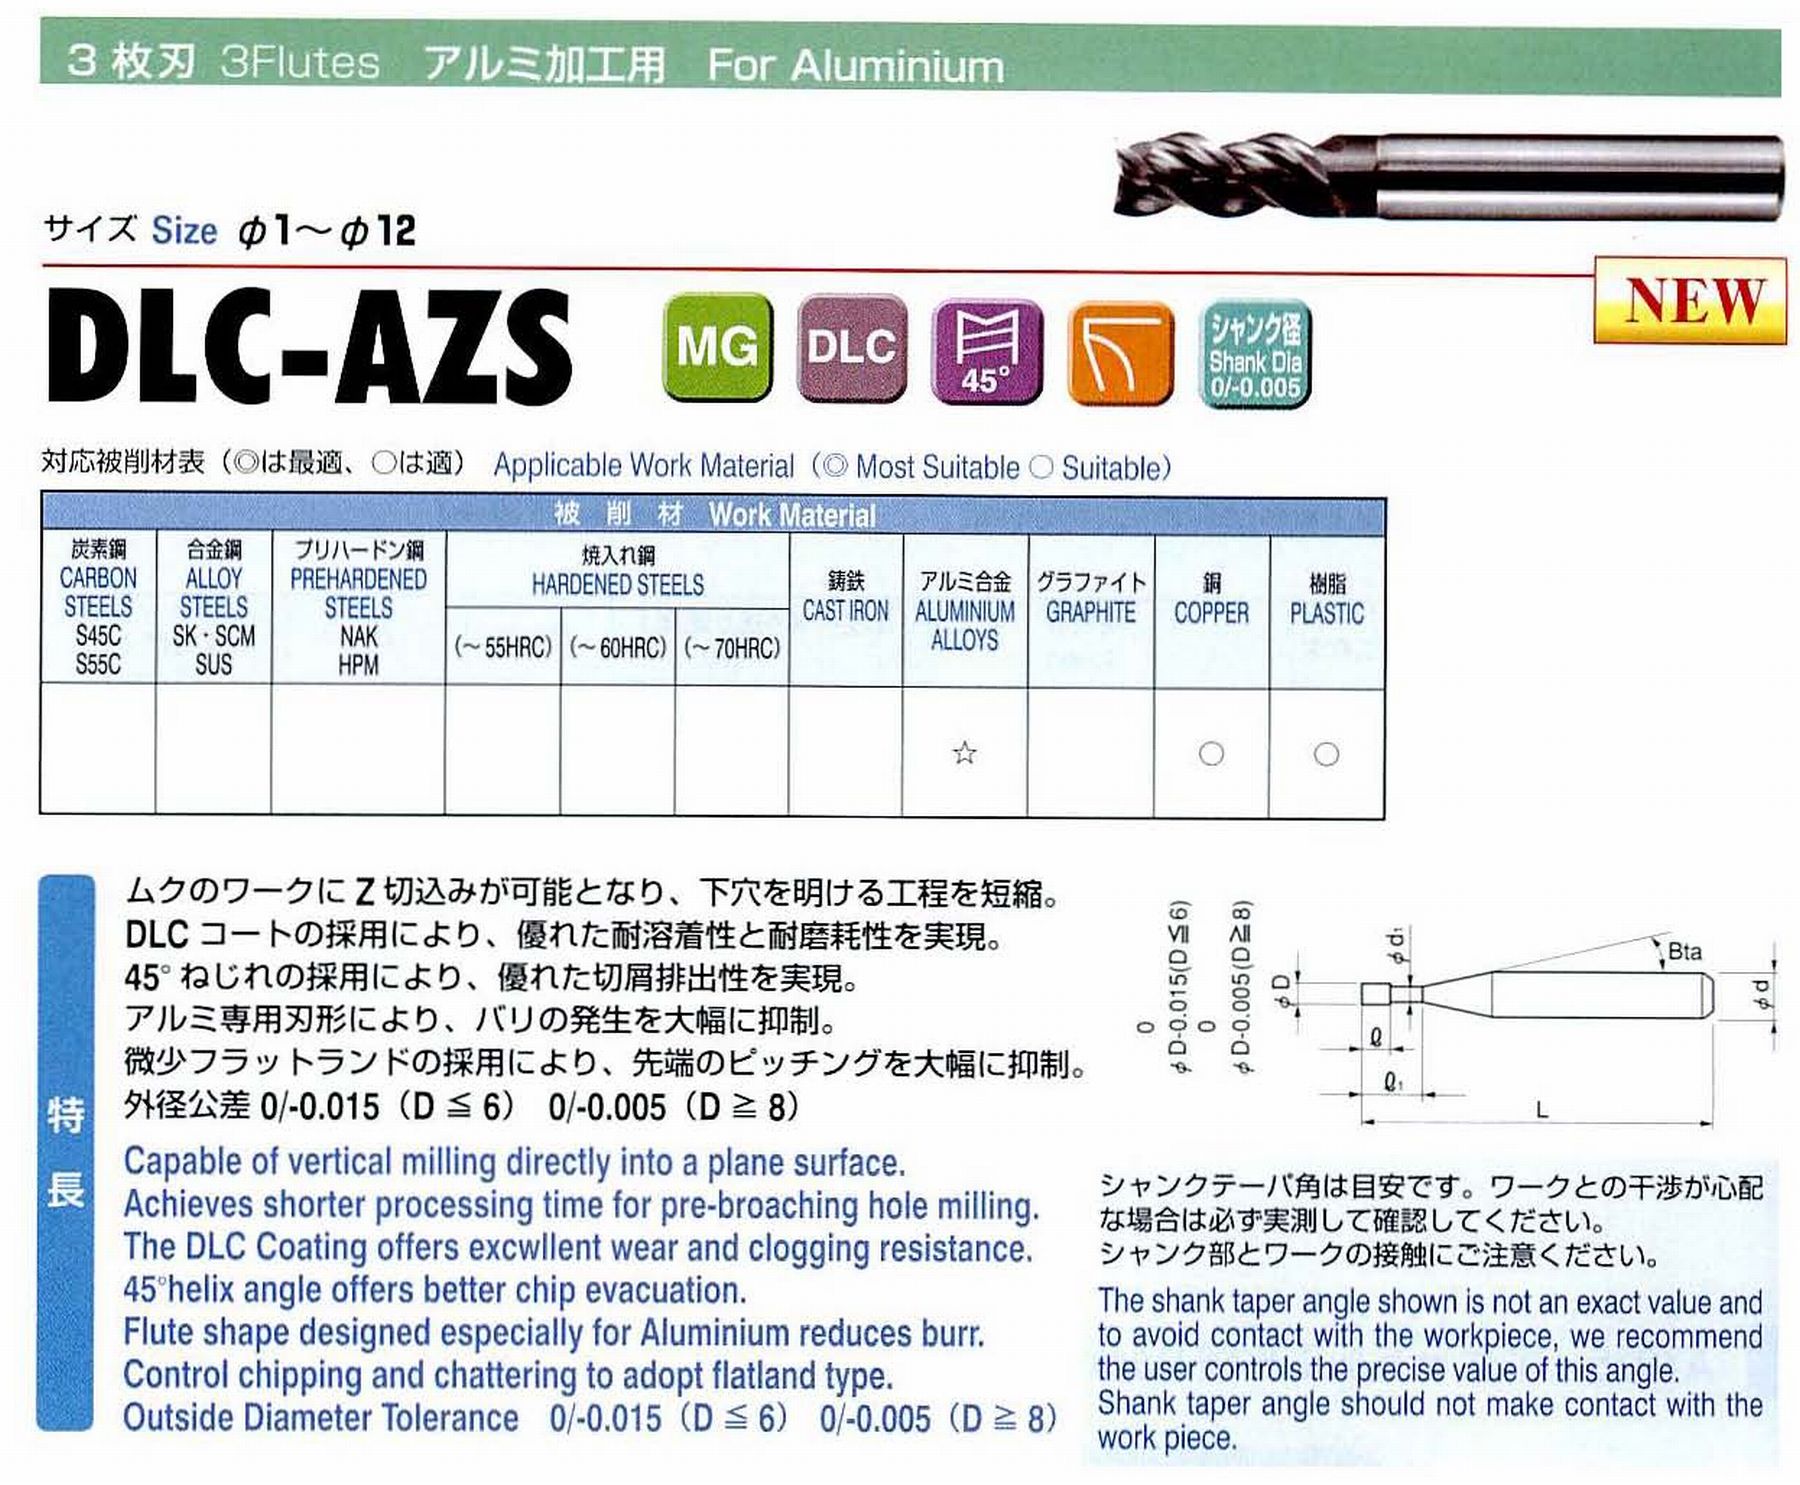 ユニオンツール 3枚刃 DLC-AZS3020-060 外径2 有効長6 刃長4 首径1.93 シャンクテーパ角16° 全長60 シャンク径4